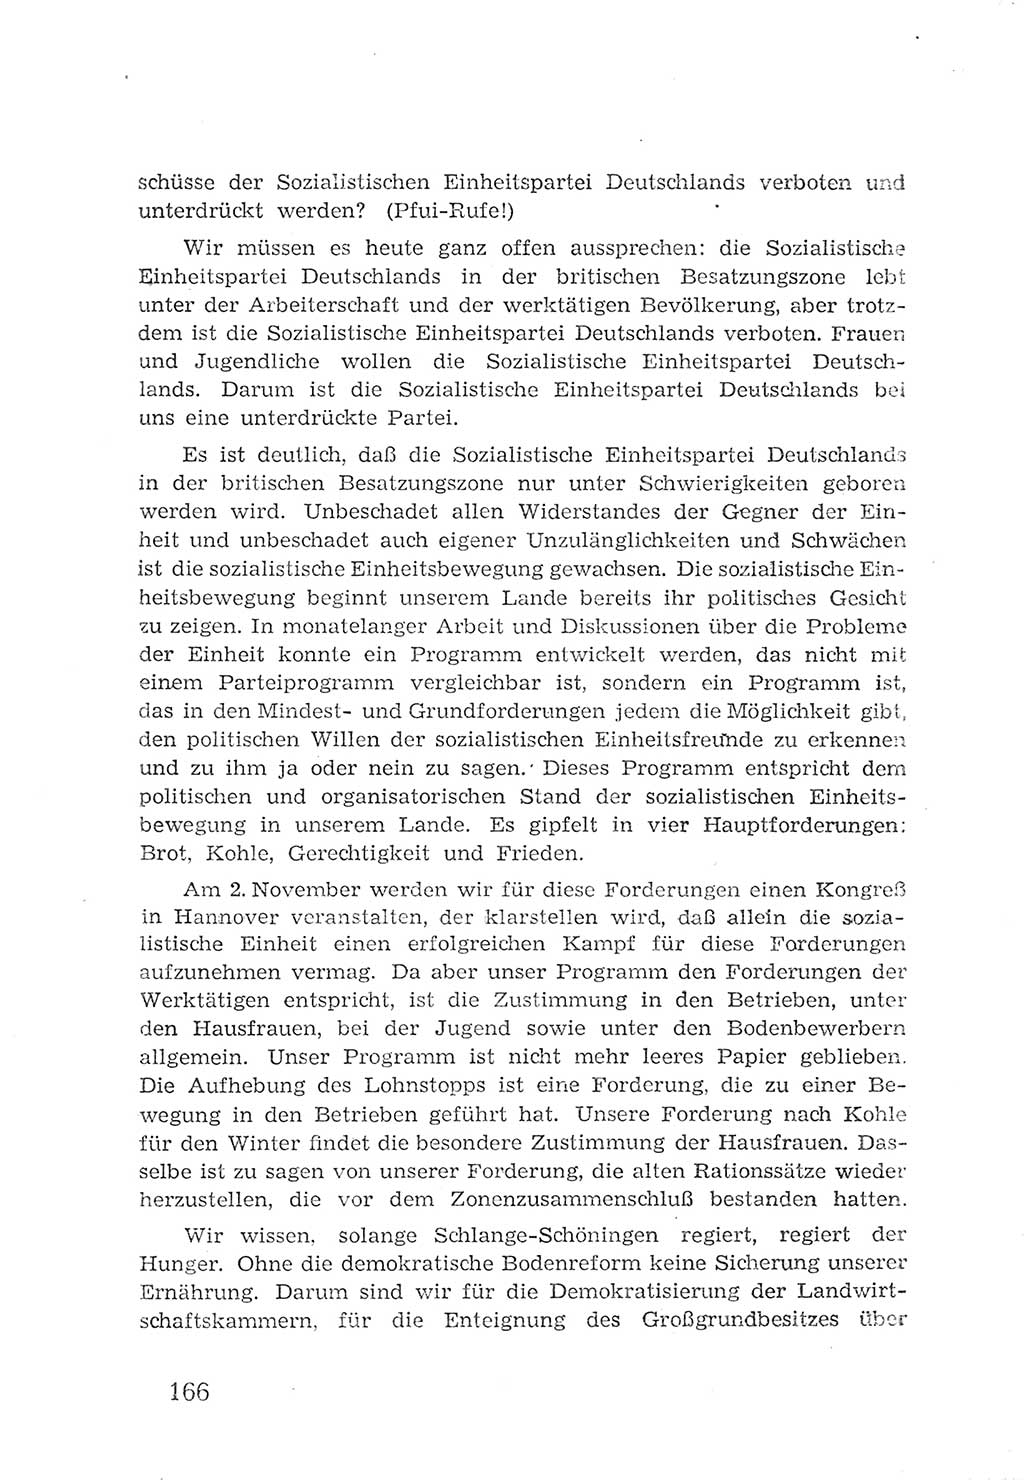 Protokoll der Verhandlungen des 2. Parteitages der Sozialistischen Einheitspartei Deutschlands (SED) [Sowjetische Besatzungszone (SBZ) Deutschlands] 1947, Seite 166 (Prot. Verh. 2. PT SED SBZ Dtl. 1947, S. 166)